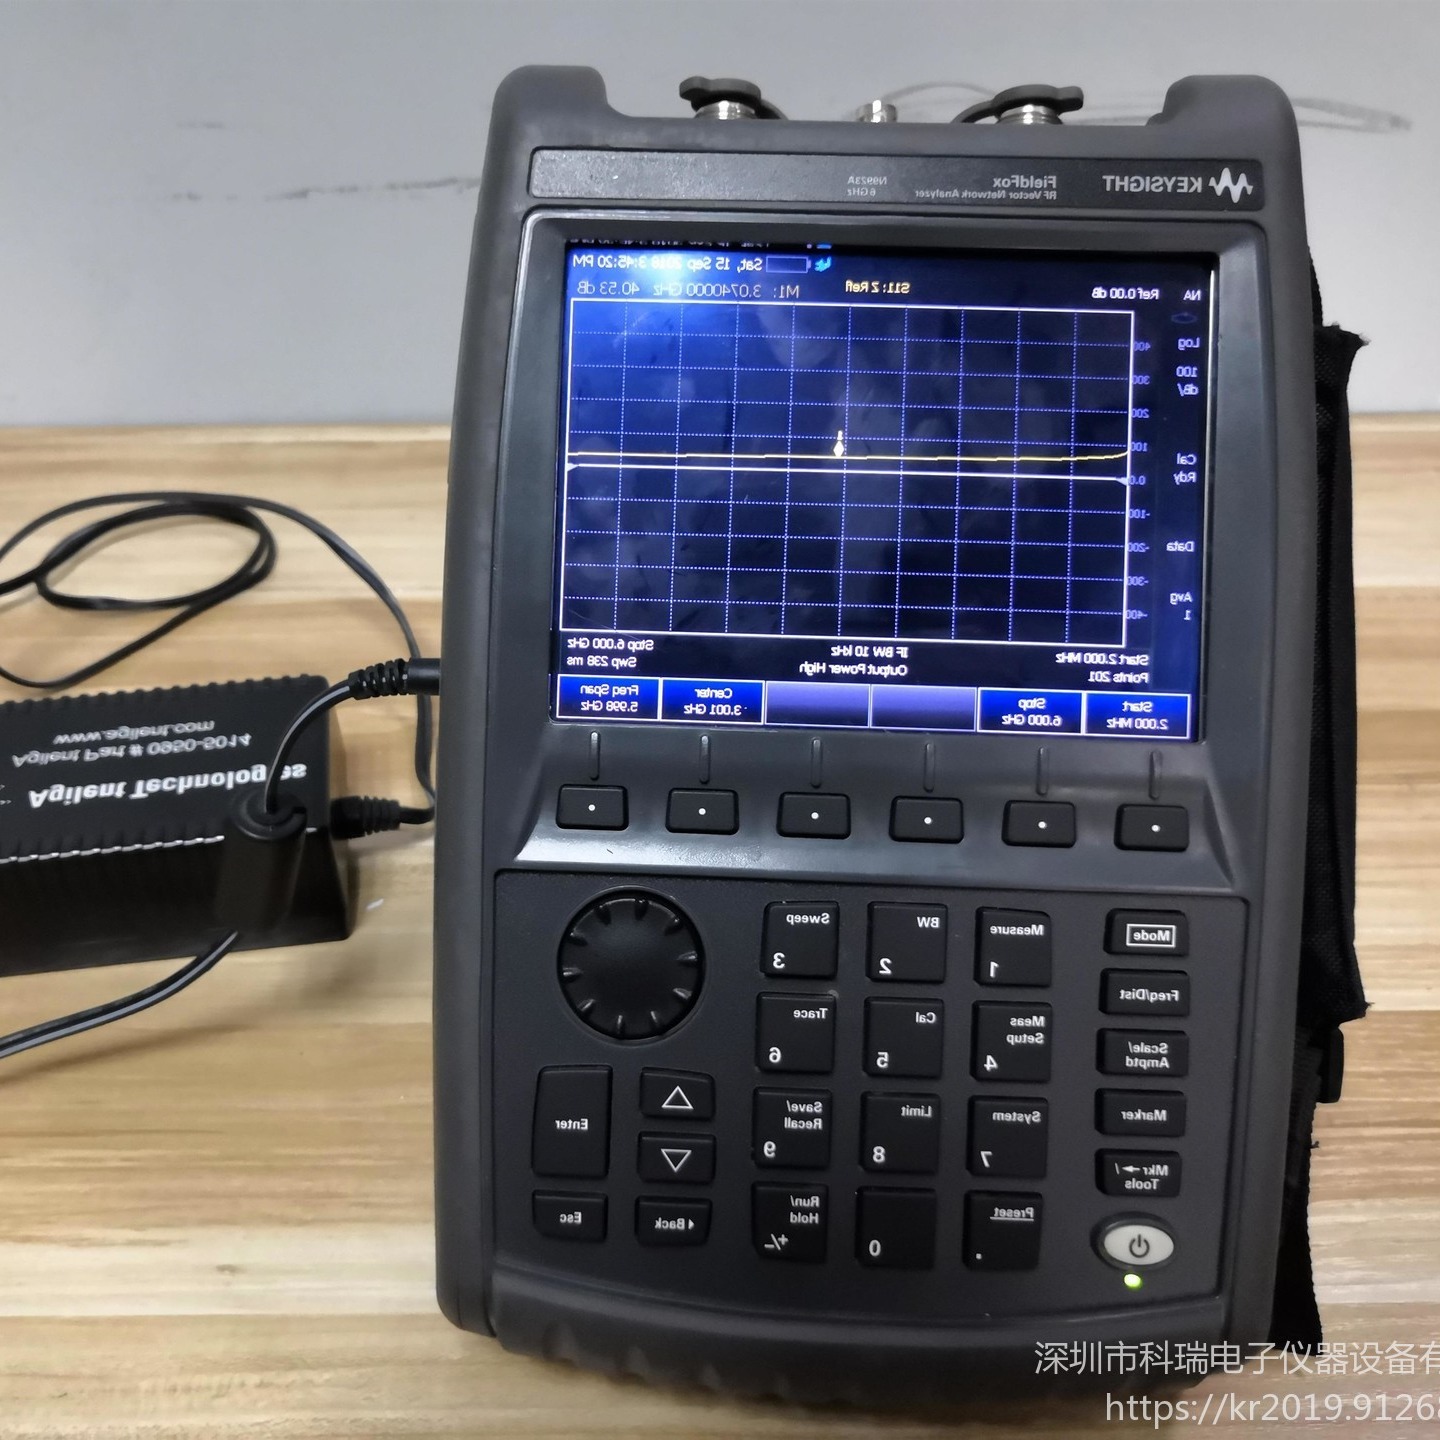 出售/回收 是德keysight N9925A FieldFox 手持式微波频谱分析仪 现货出售